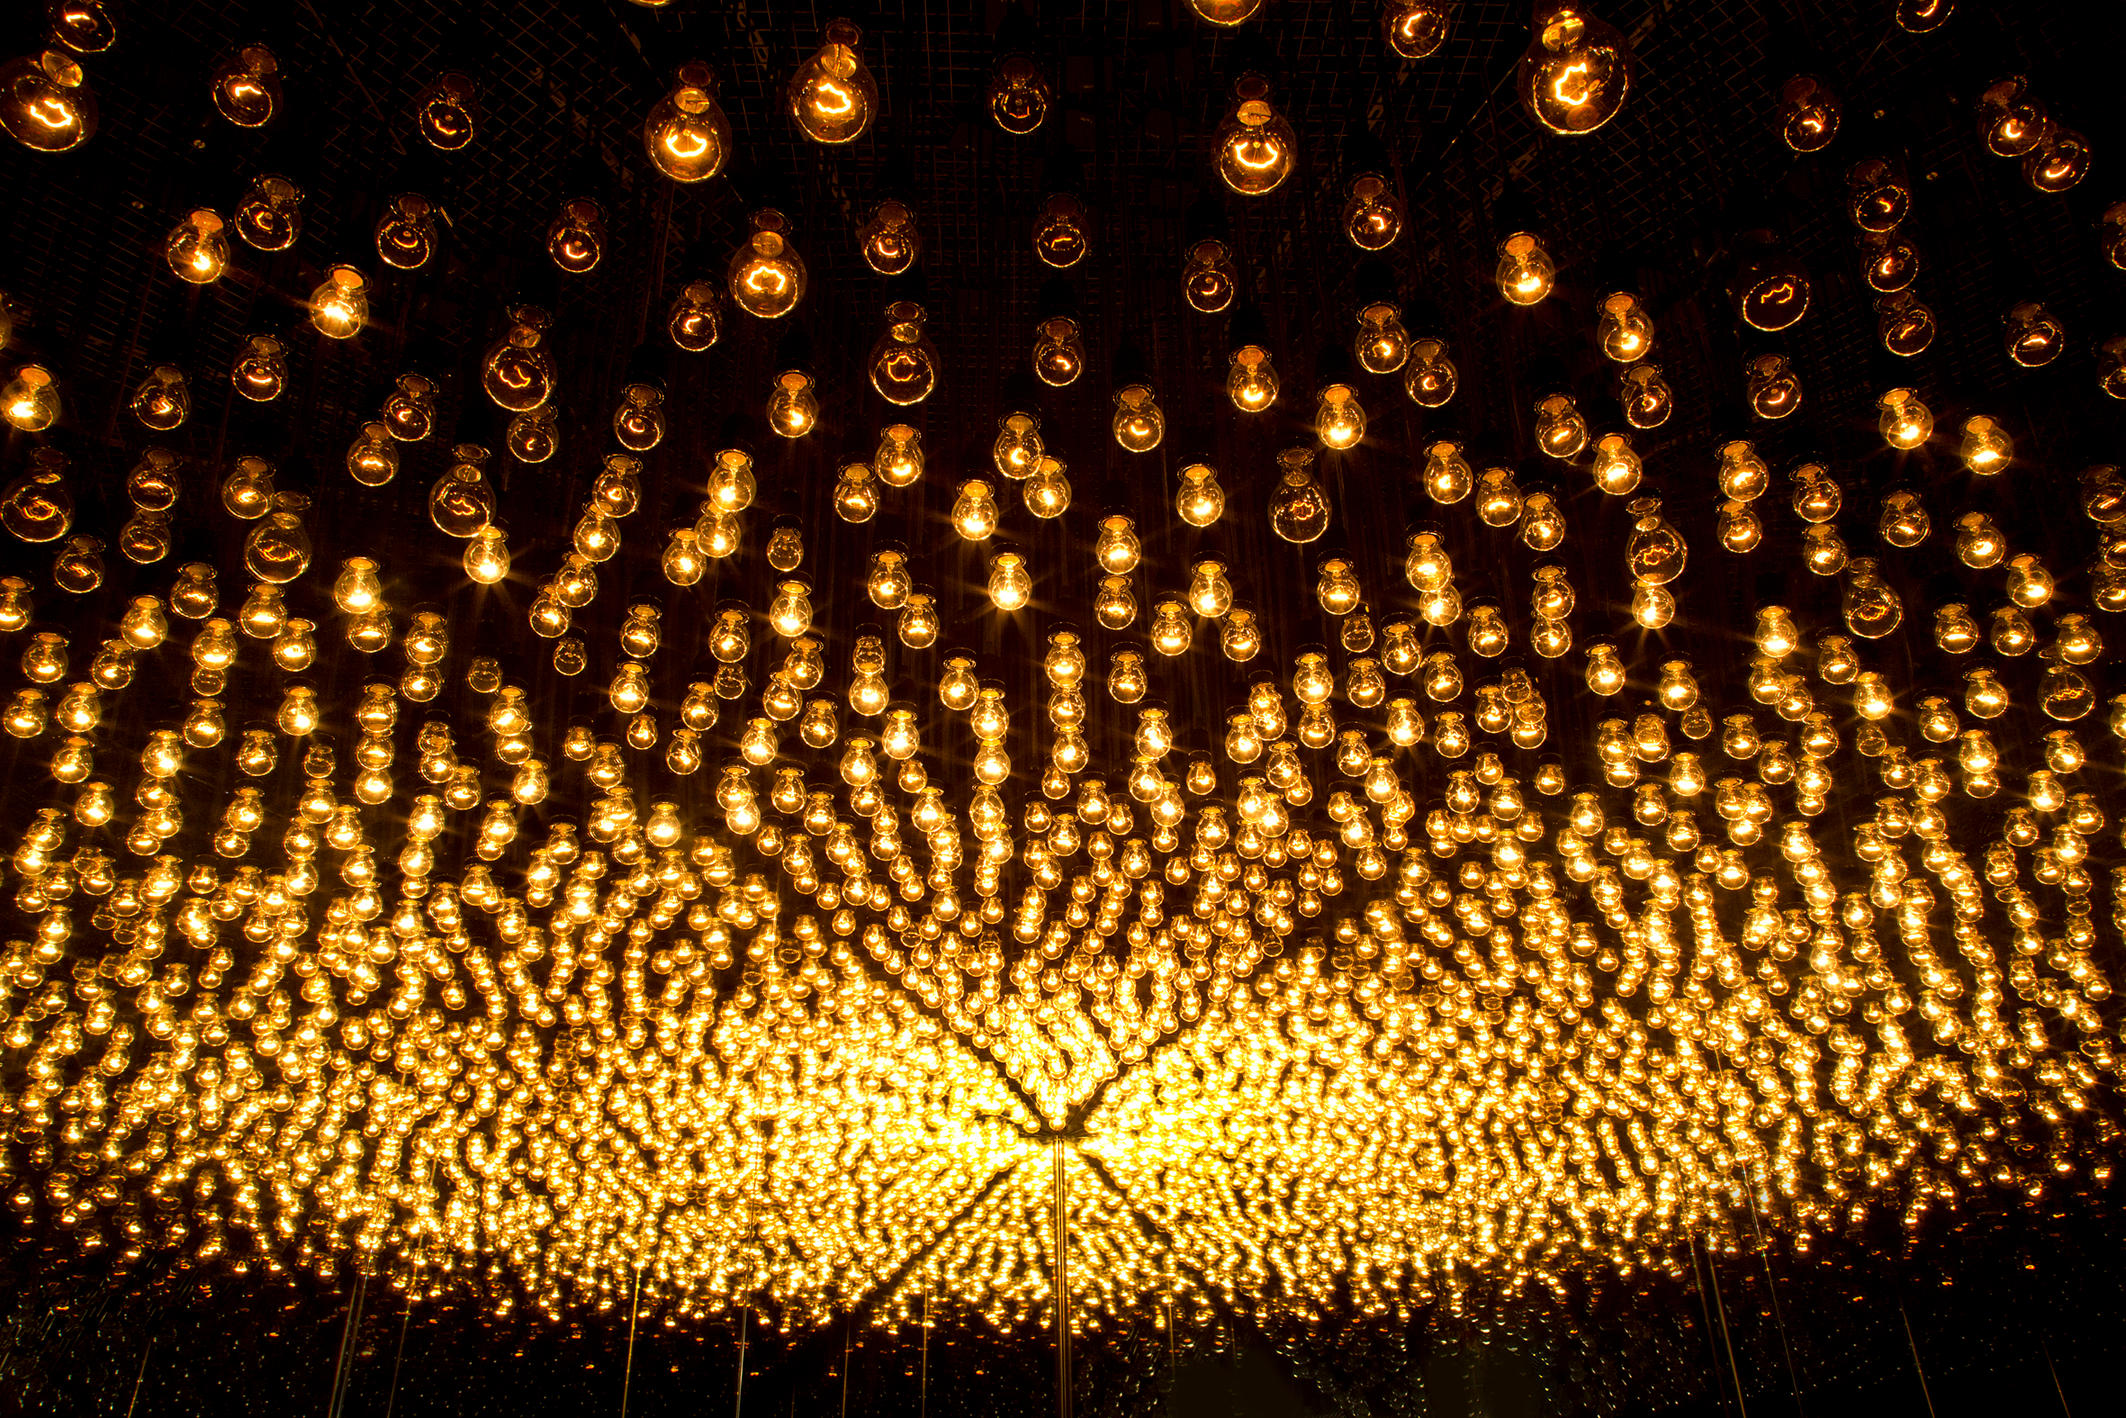 Tausende von Glühbirnen in einem schwarzen Raum